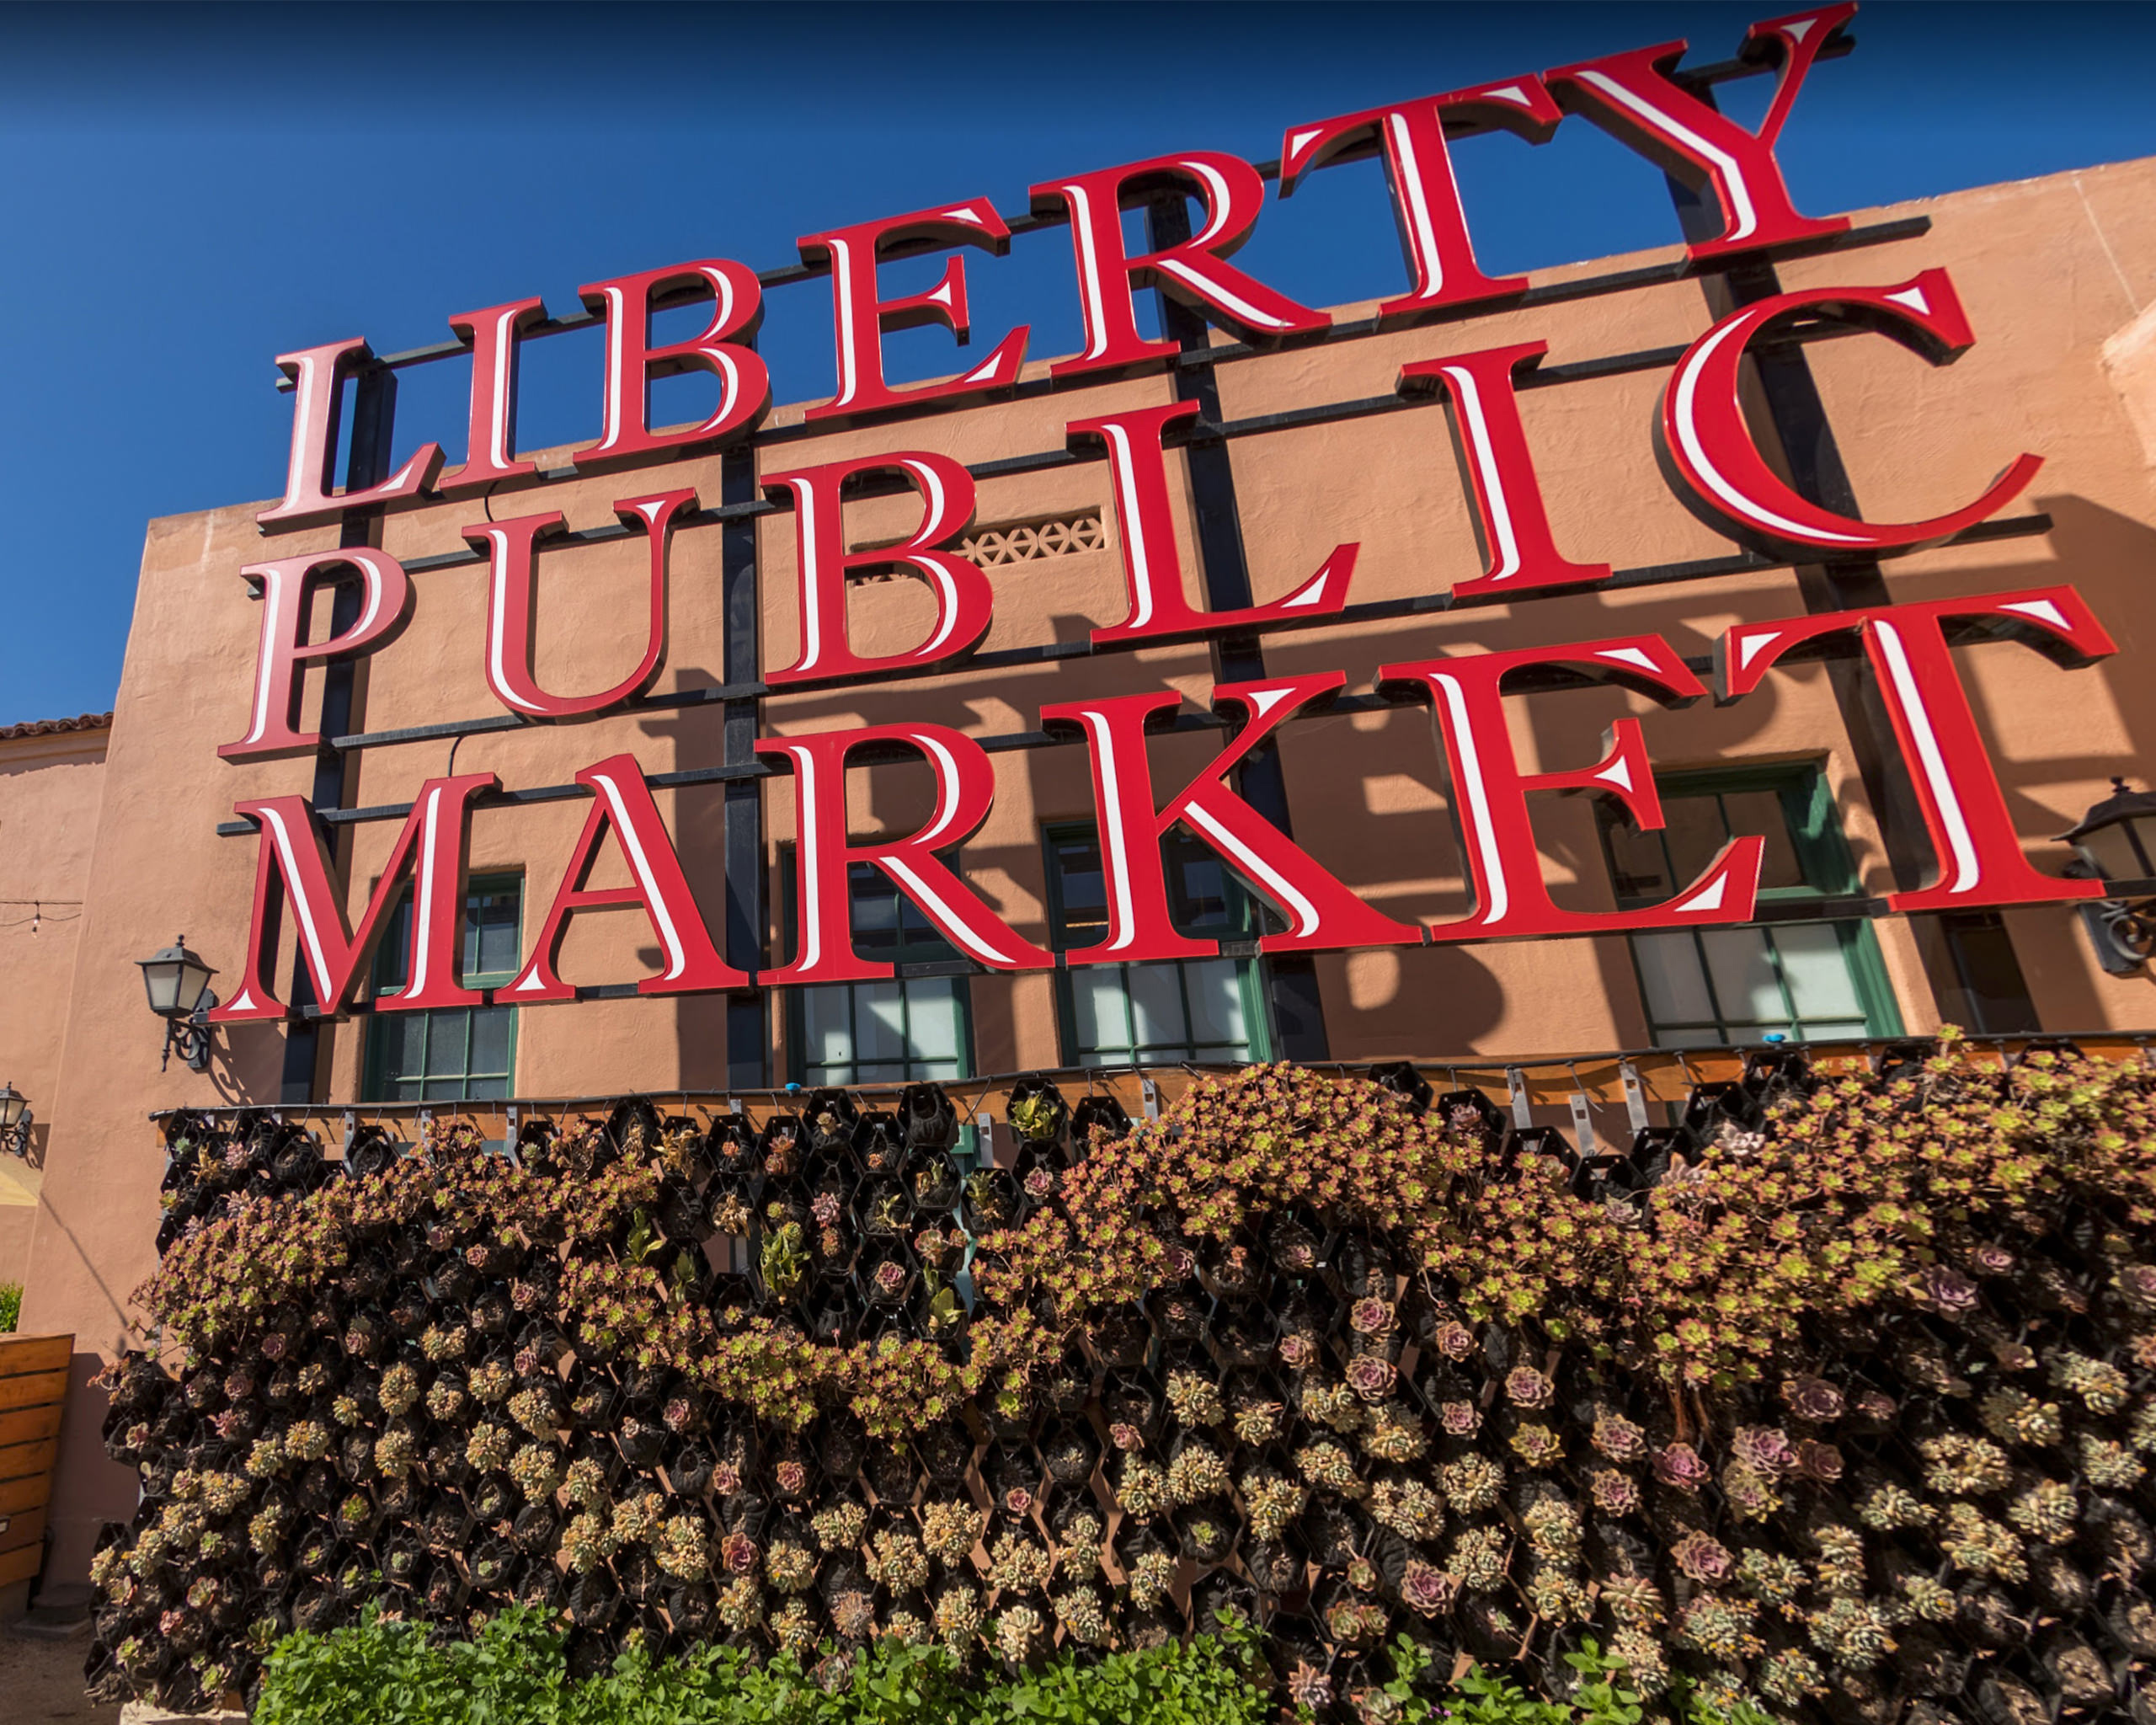 Liberty Public Market San DIego